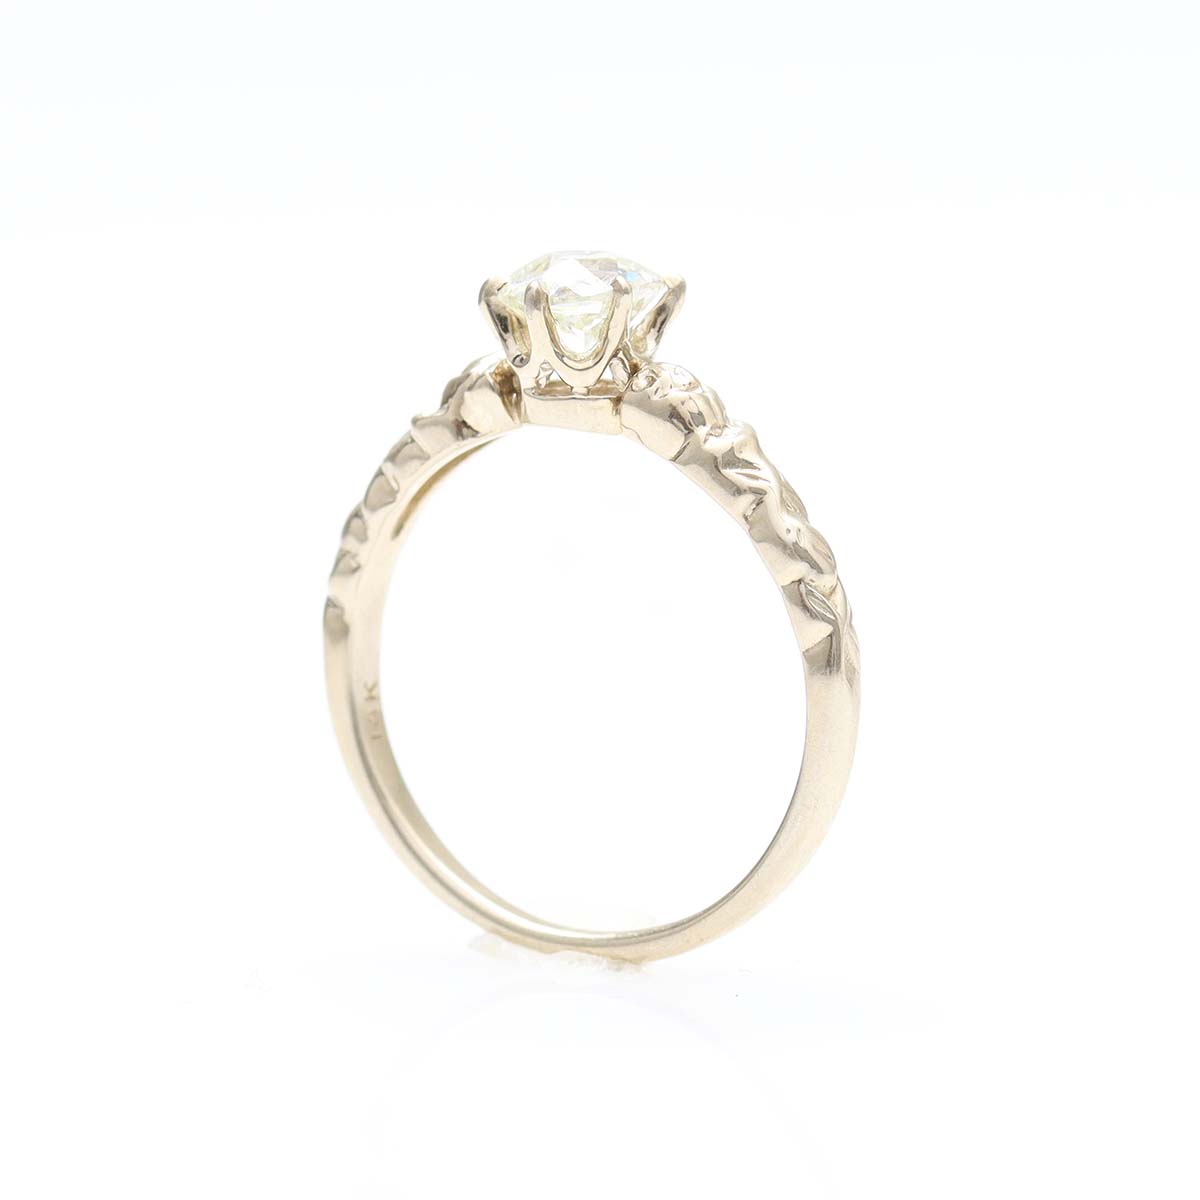 Replica Art Nouveau Engagement Ring #3383-2